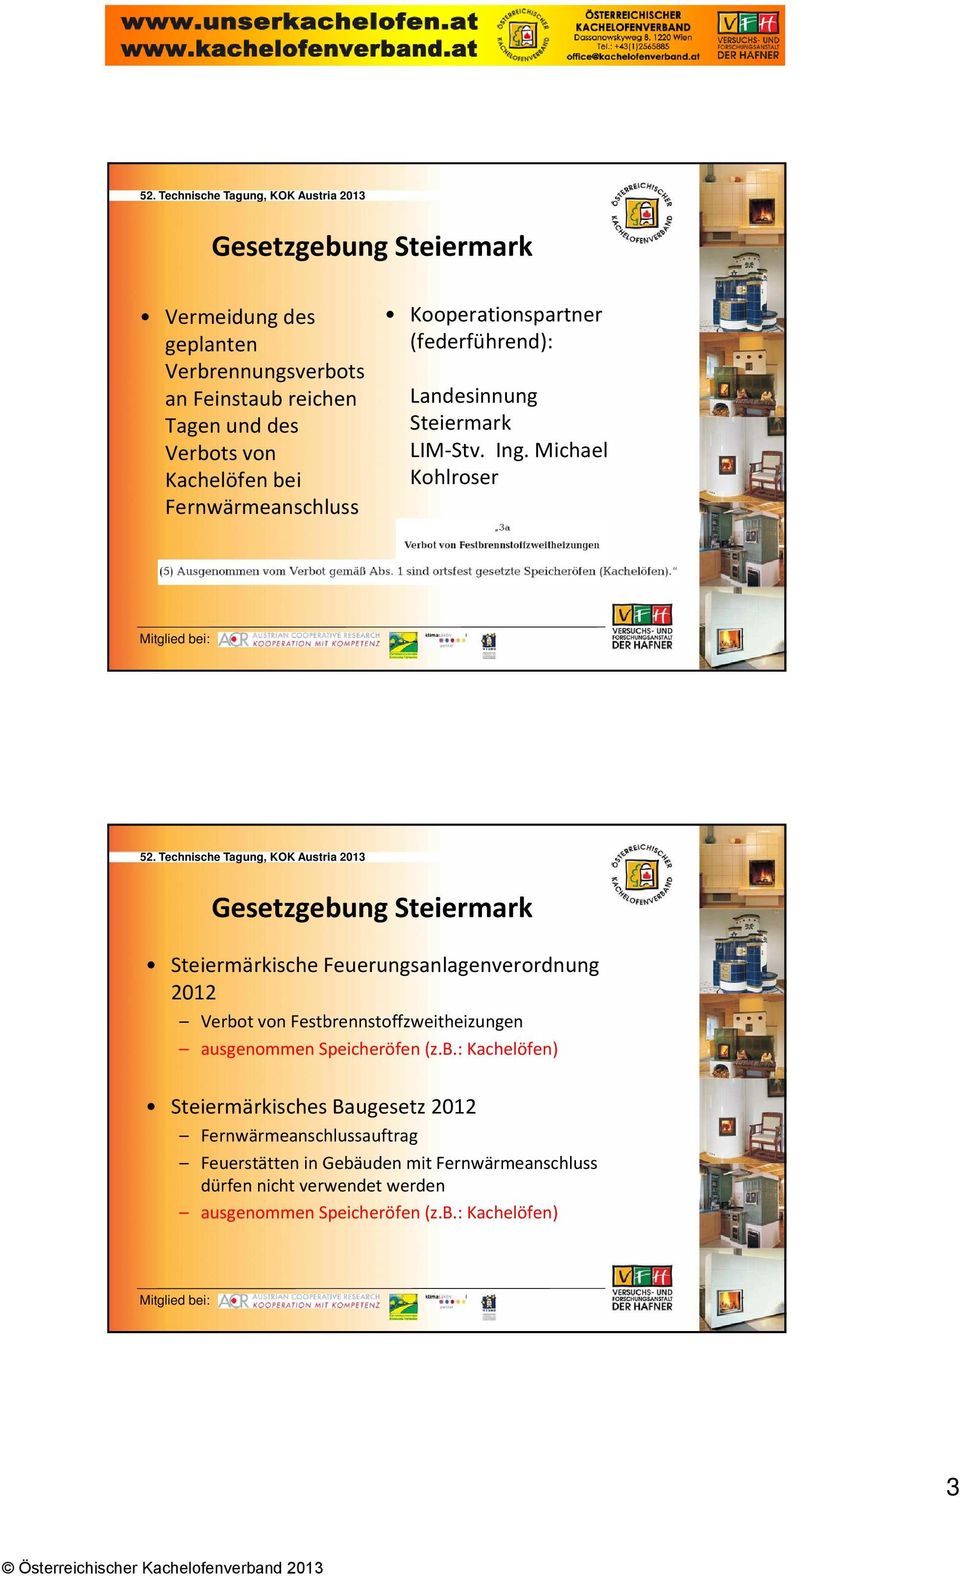 Michael Kohlroser Gesetzgebung Steiermark Steiermärkische Feuerungsanlagenverordnung 2012 Verbot von Festbrennstoffzweitheizungen ausgenommen